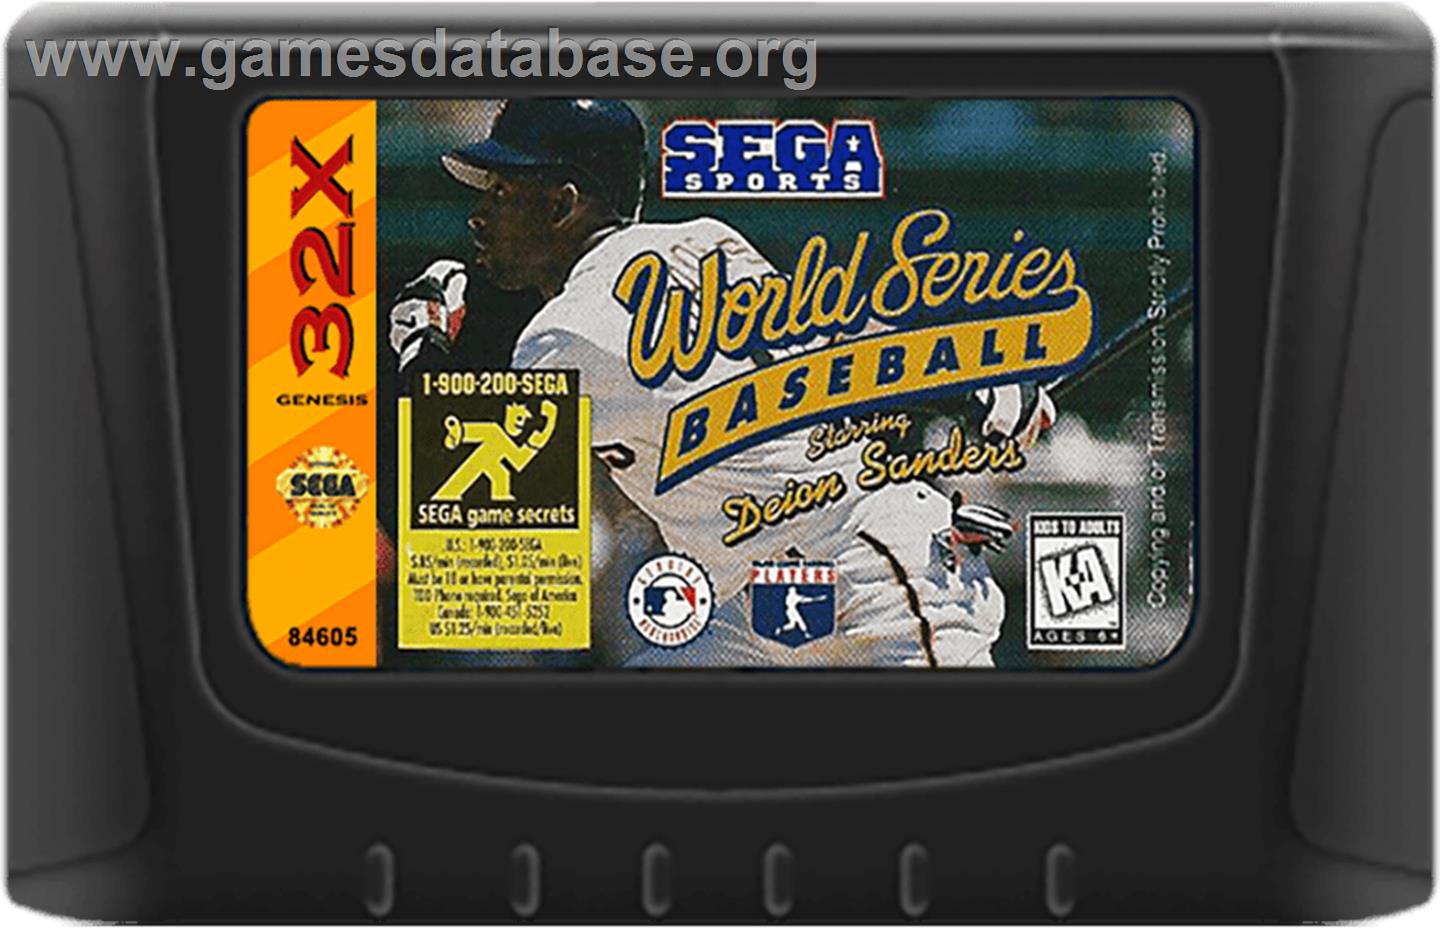 World Series Baseball starring Deion Sanders - Sega 32X - Artwork - Cartridge